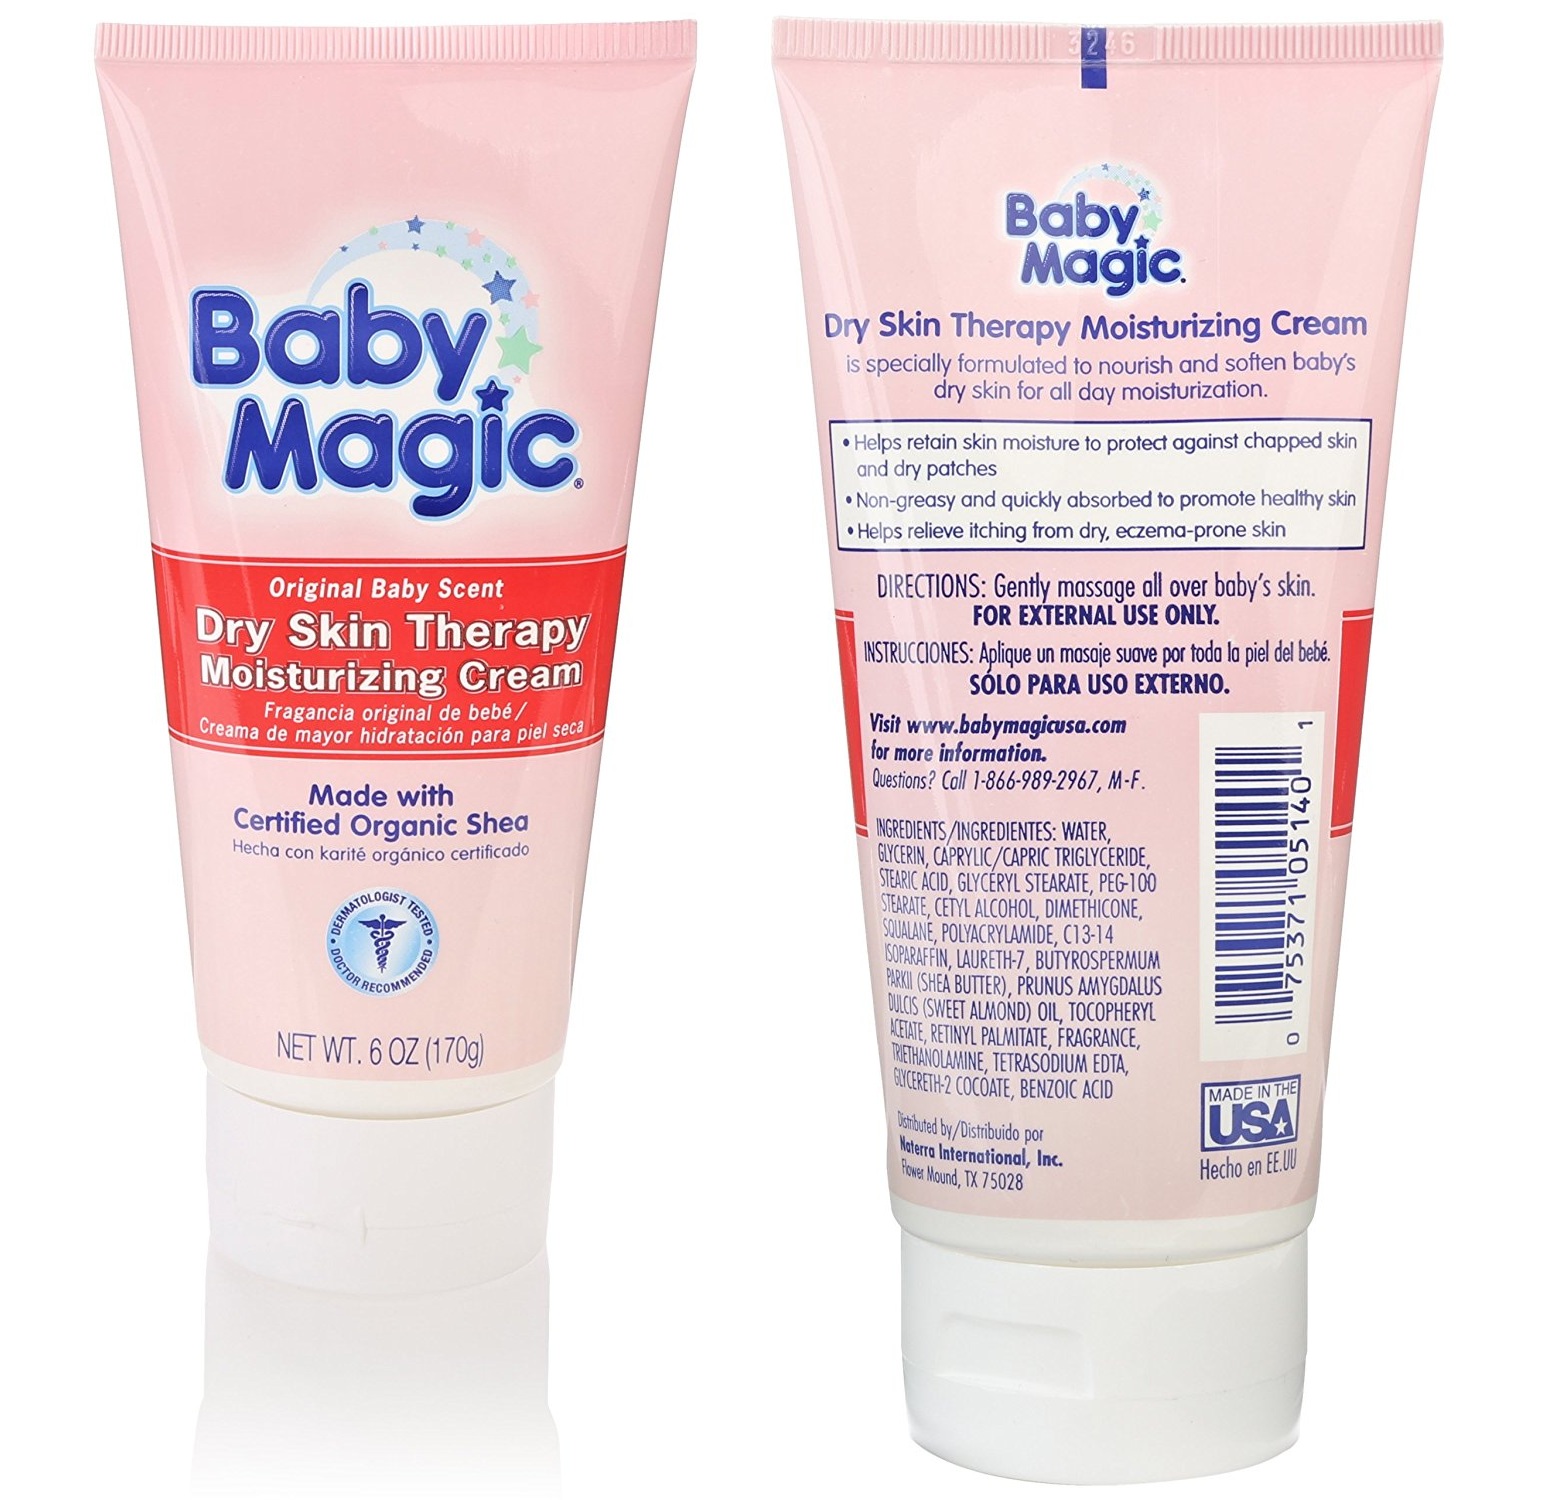 Baby Magic Dry Skin chuyên trị chàm cho bé Baby Magic Dry Skin Therapy Moisturizing Cream